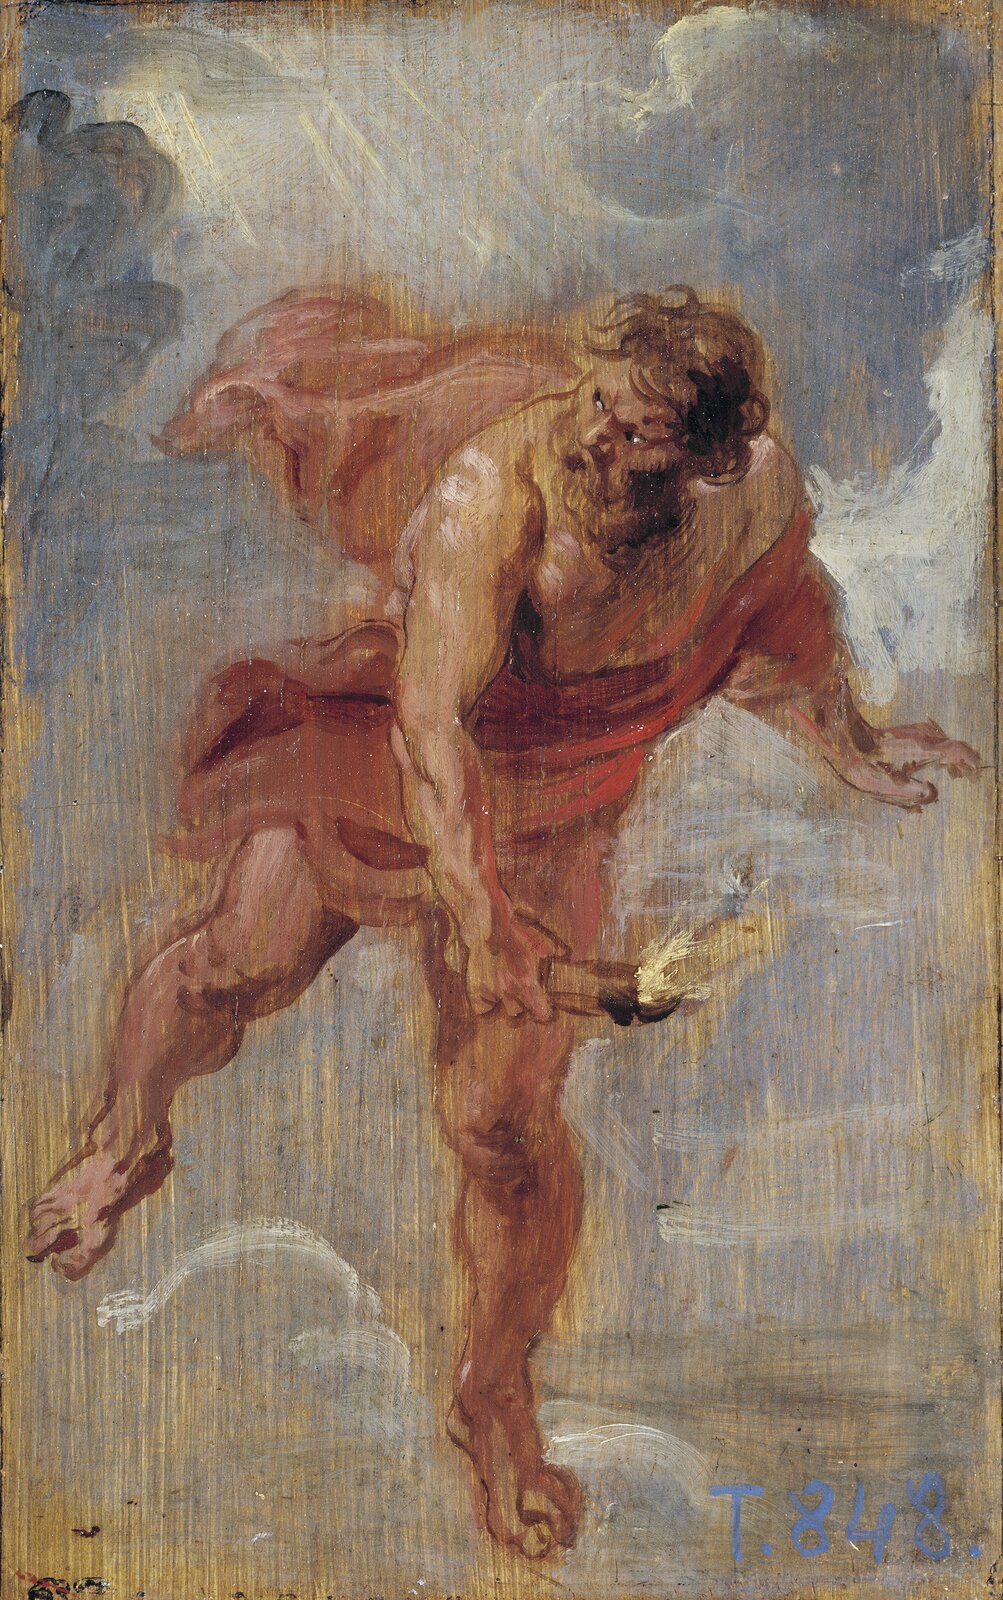 Praca Petera Paula Rubensa przedstawia dzieło pod tytułem „Prometeusz”. Na obrazie widoczny jest mężczyzna unoszący się w powietrzu, ma on średniej długości włosy oraz bujny zarost. Ubrany jest w czerwoną szatę zakrywającą jego tors oraz dolne partie ciała. W jego dłoni widoczny jest podpalony kawałek drewna, który zamierza rzucić w stronę ludzi. 